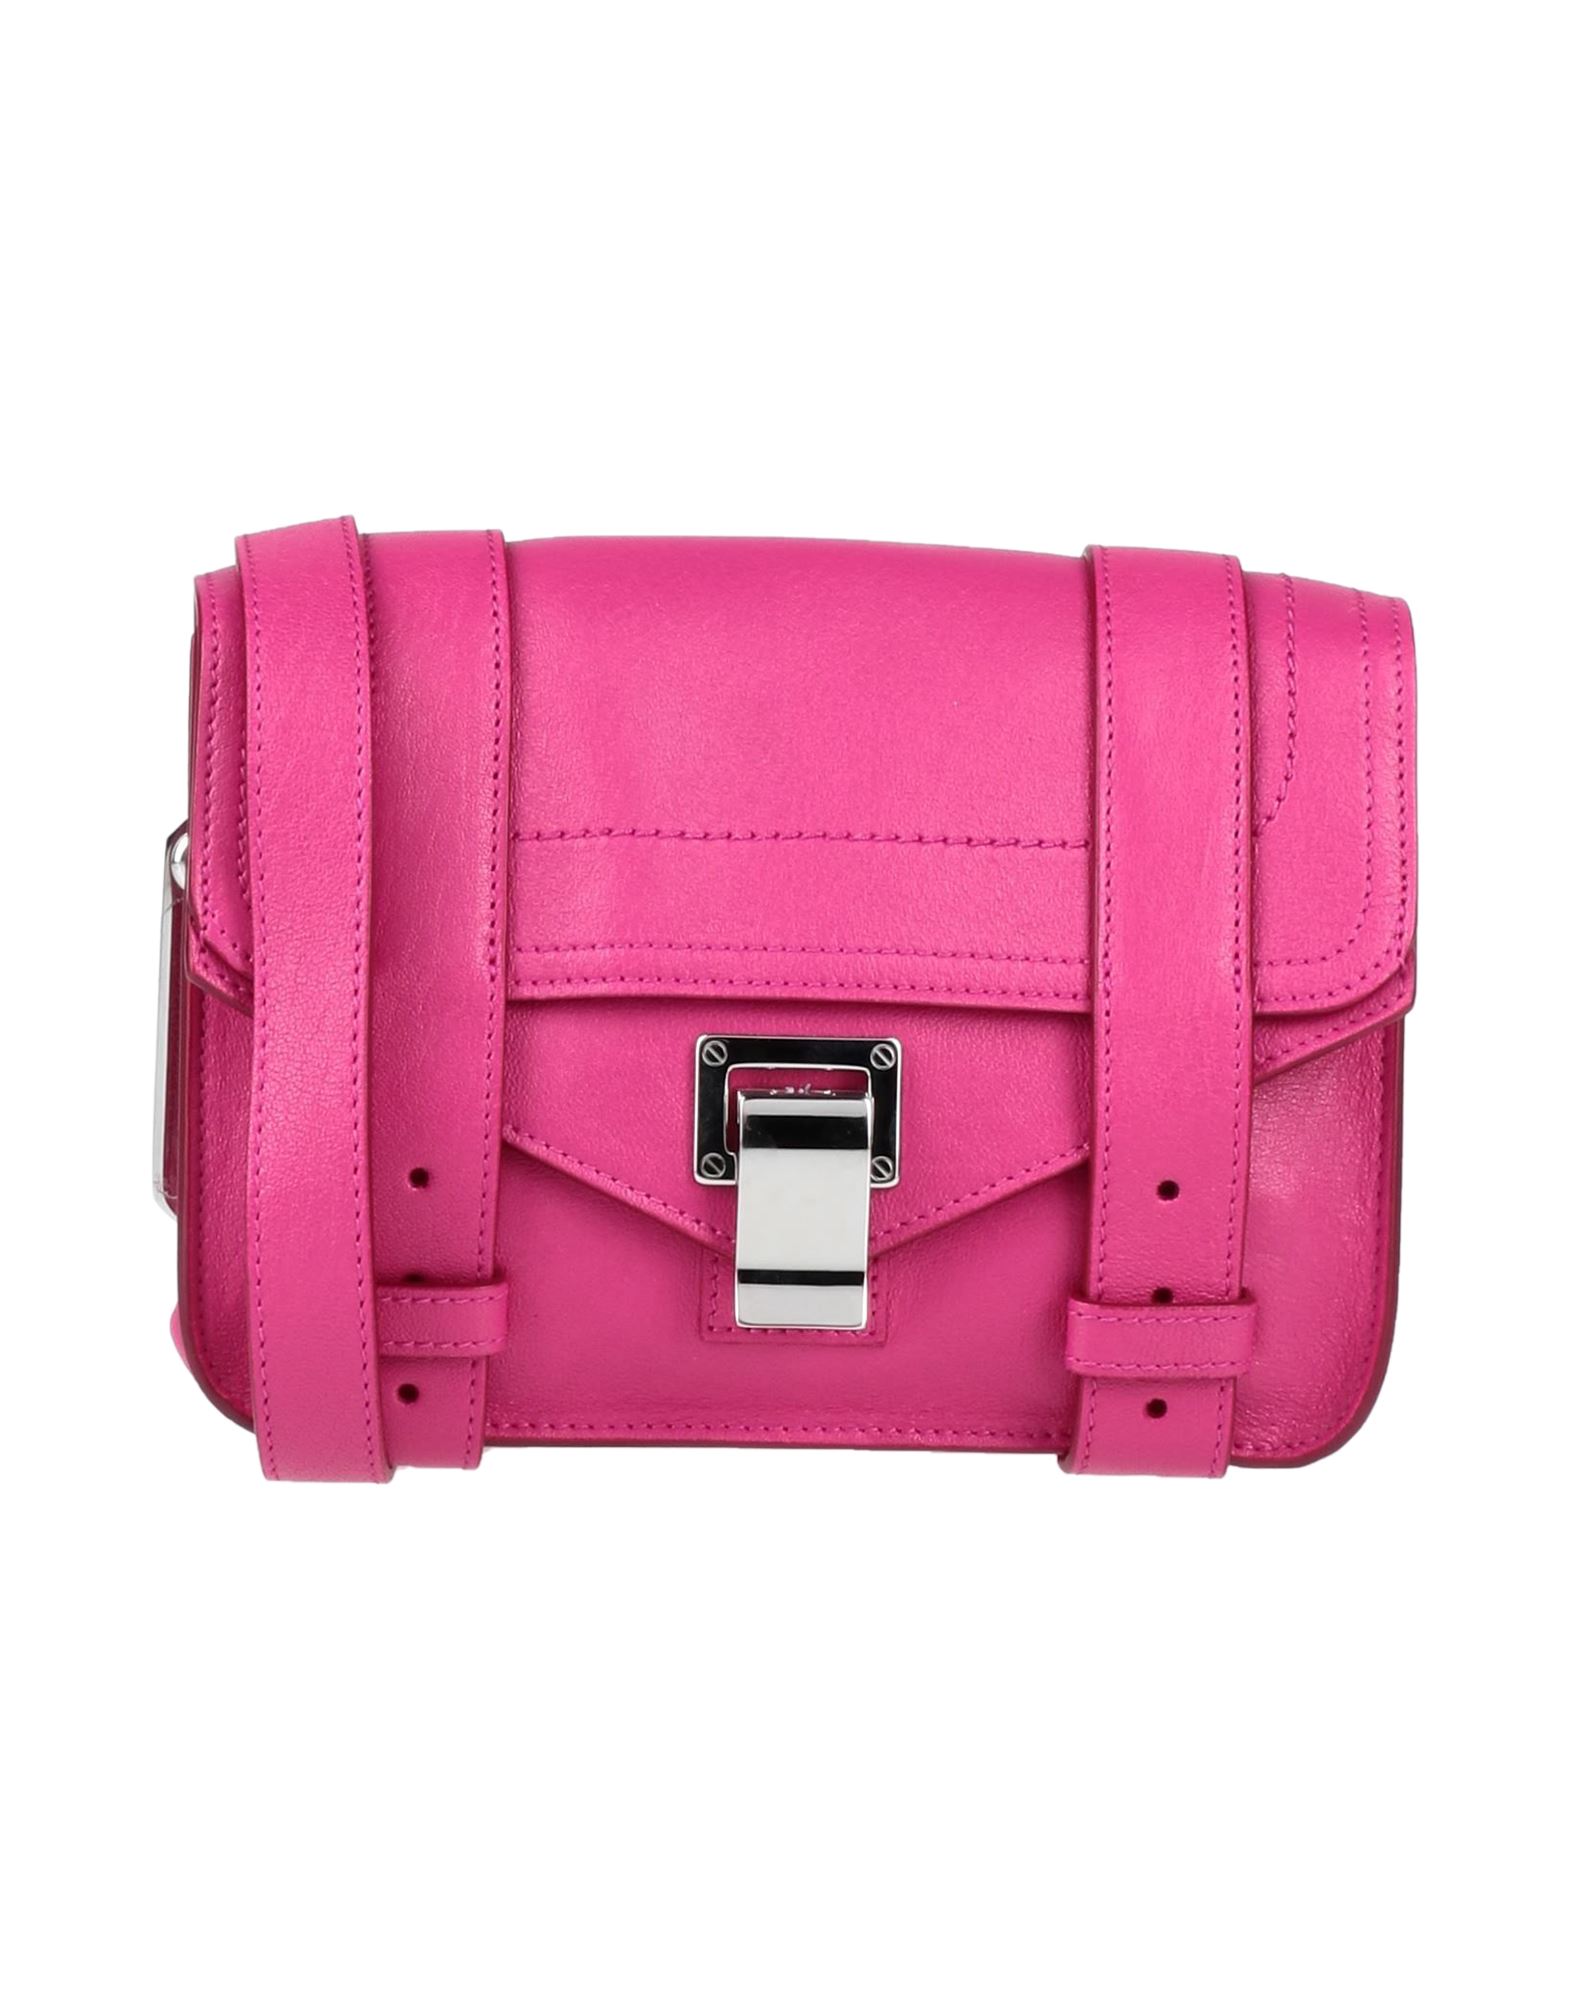 Proenza Schouler Handbags In Garnet